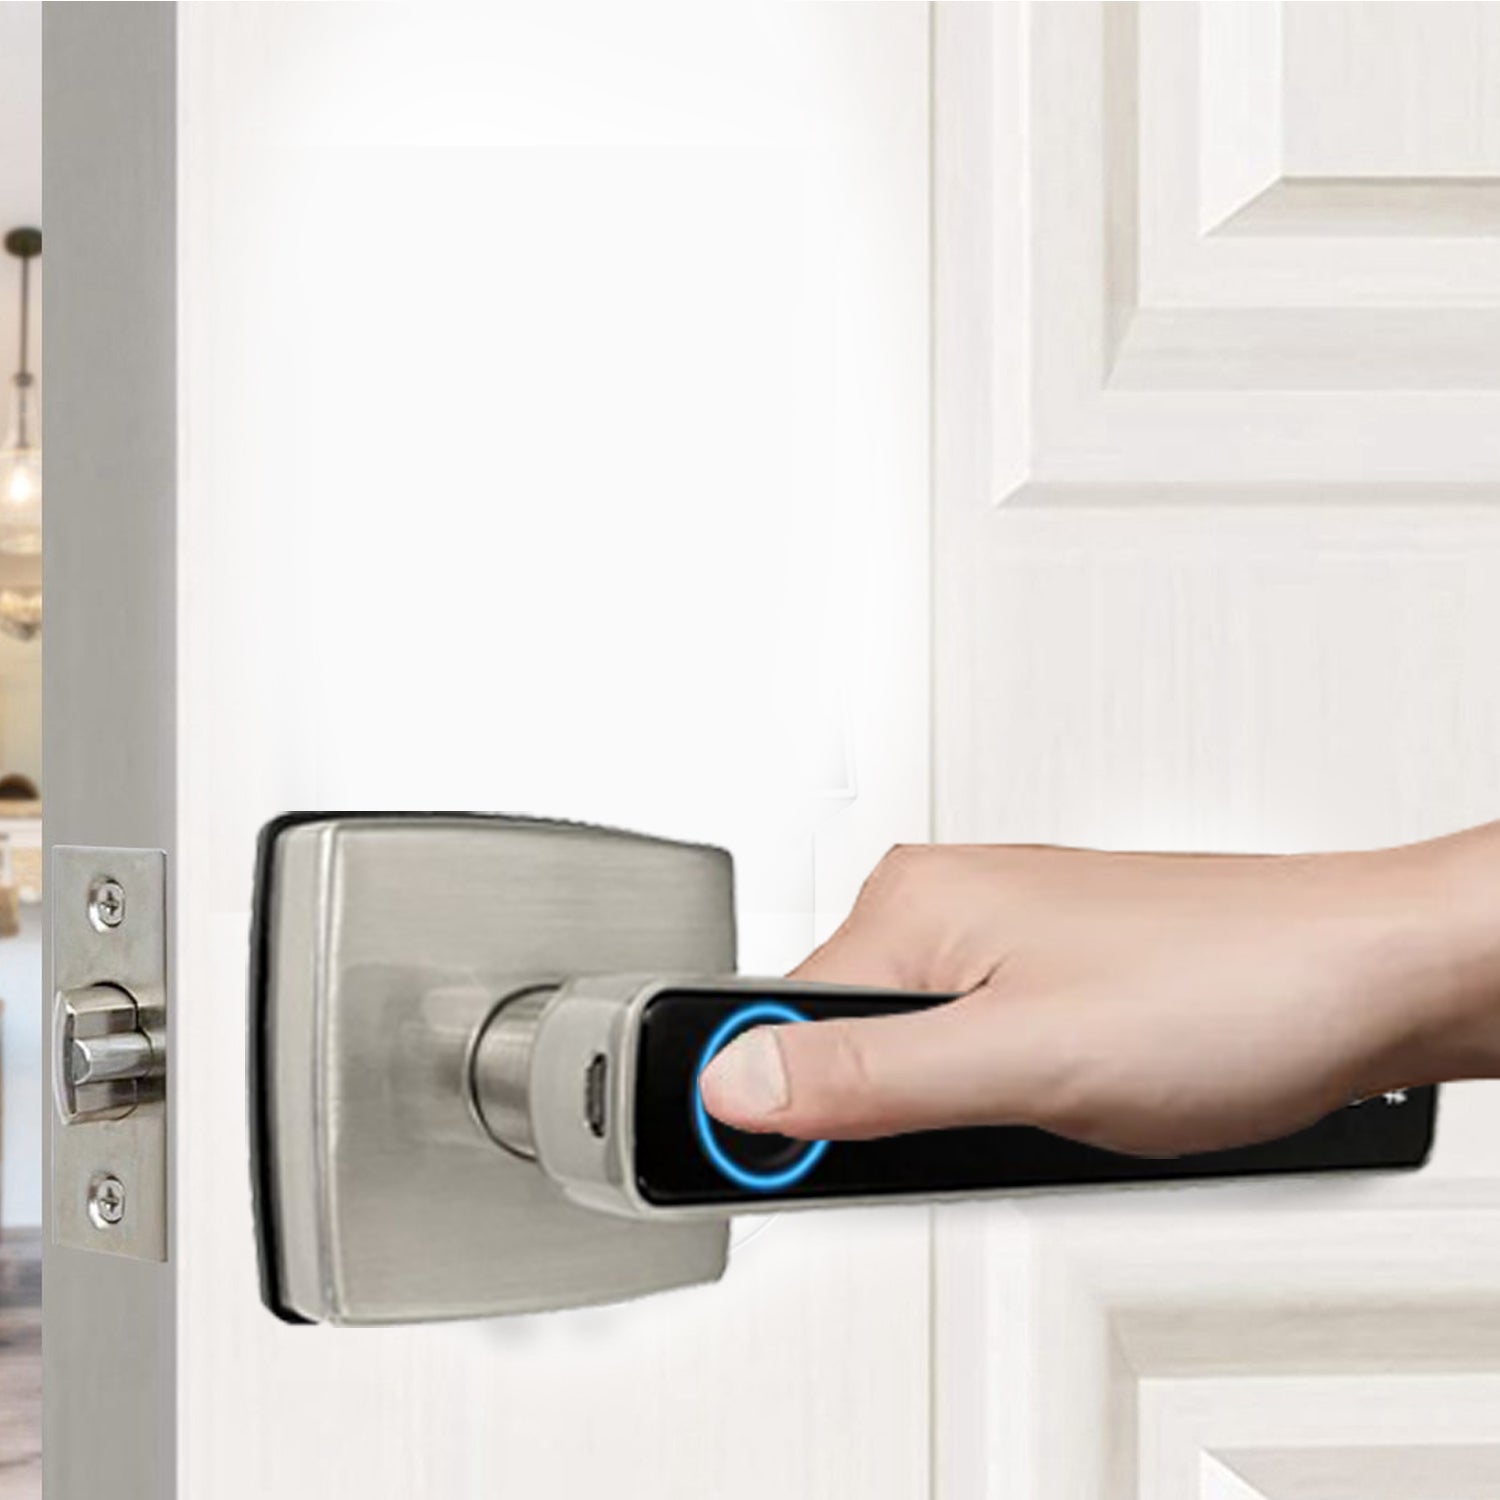 Smart Door Lock LK-101 with Fingerprint